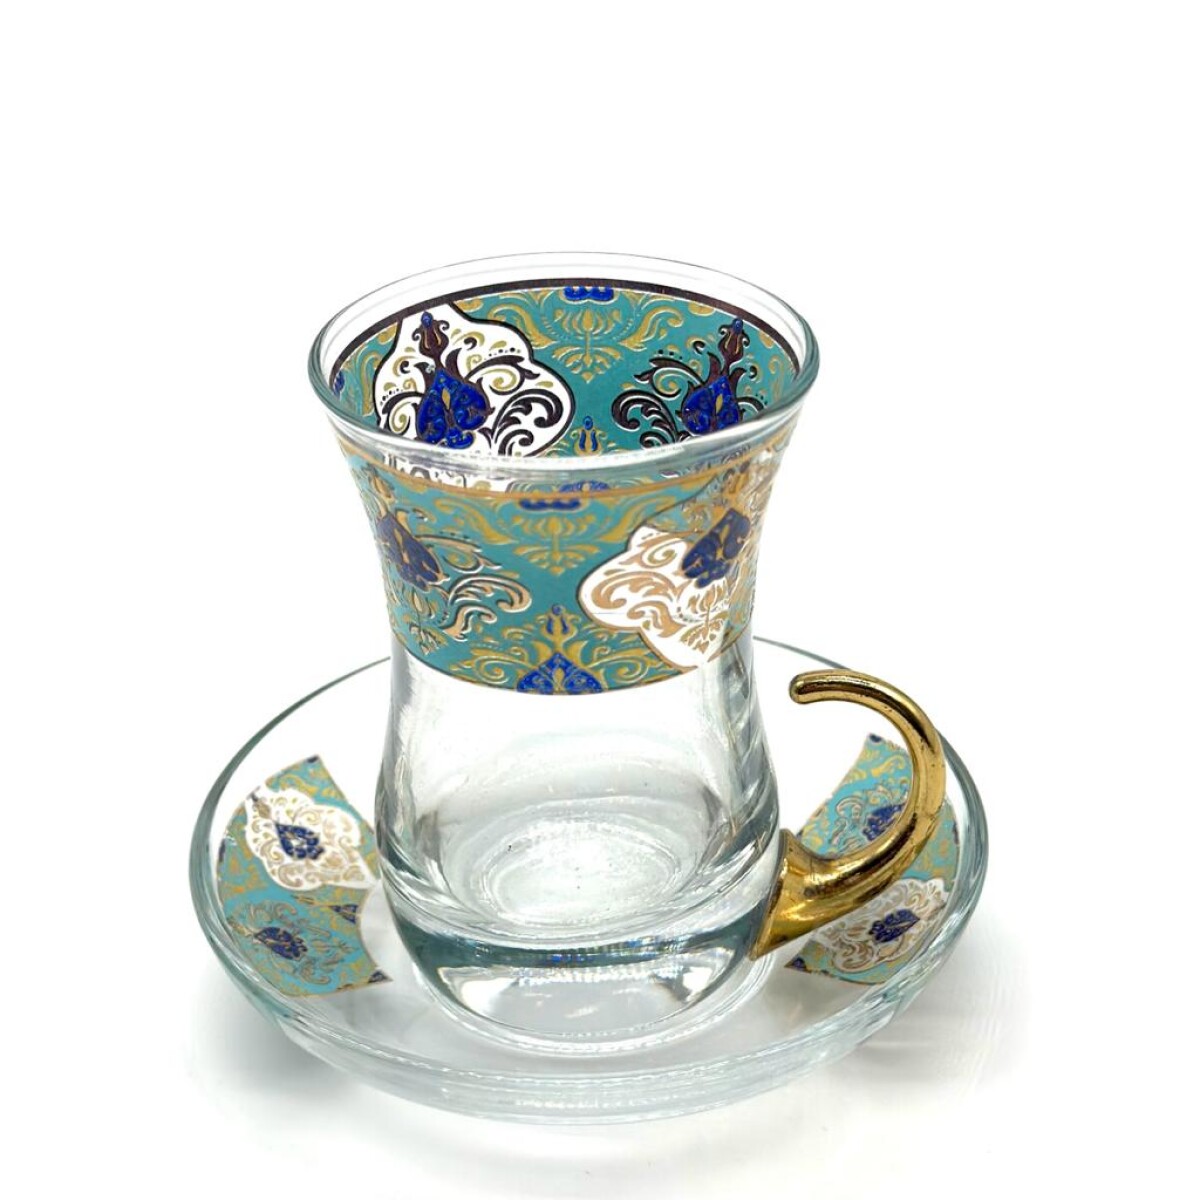 Vaso de té vip arabescos x1 - Verde aqua 